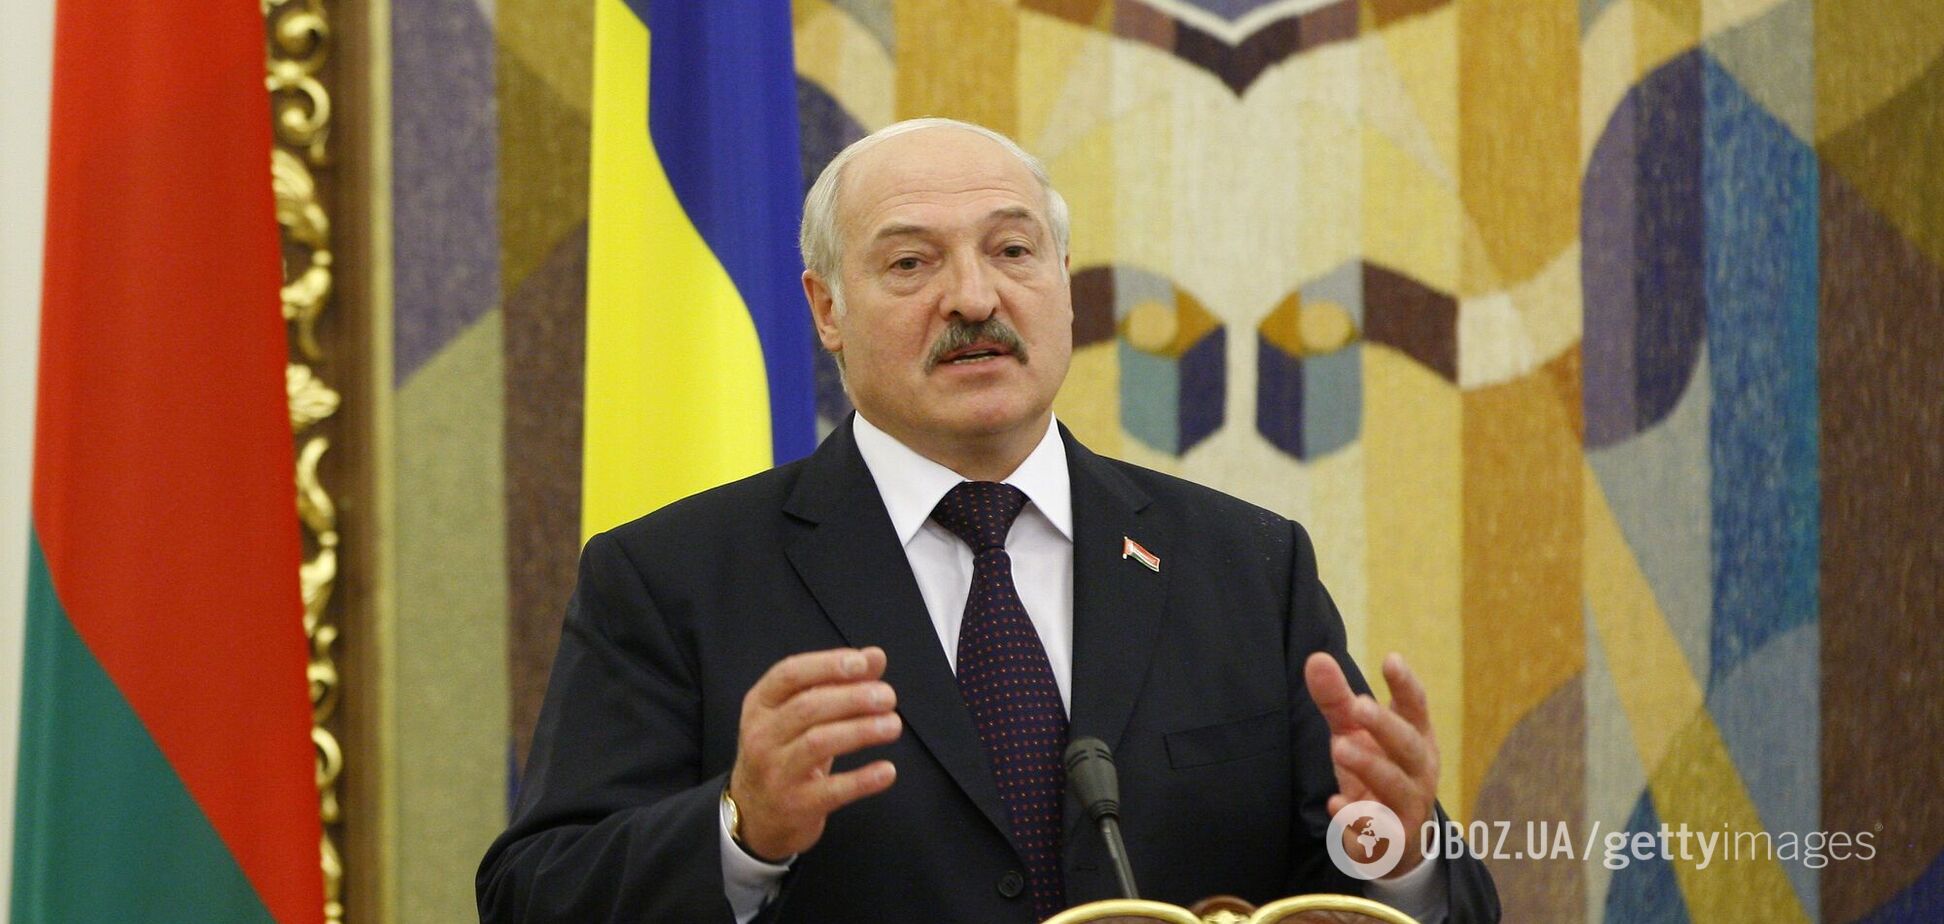 'Украина не воюет сегодня': Лукашенко сделал странное заявление о войне и вероятности участия в ней Беларуси